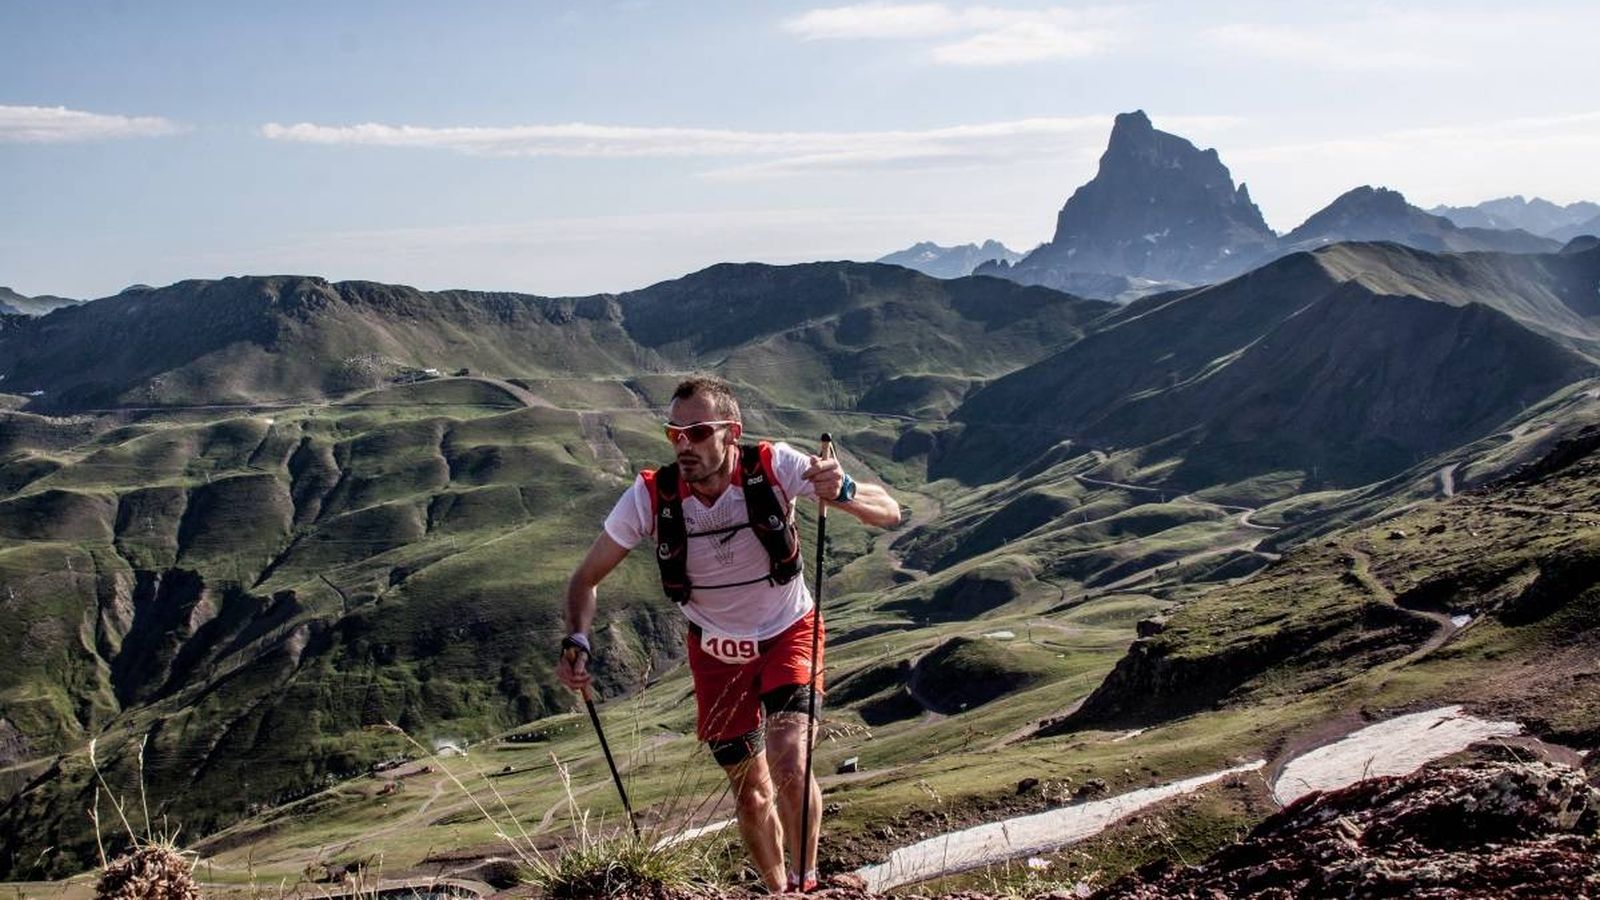 Foto: Iker Karrera en la pasada edición con el pico de Midi d'Ossau al fondo de la imagen. (Foto: Pirineos Fit)